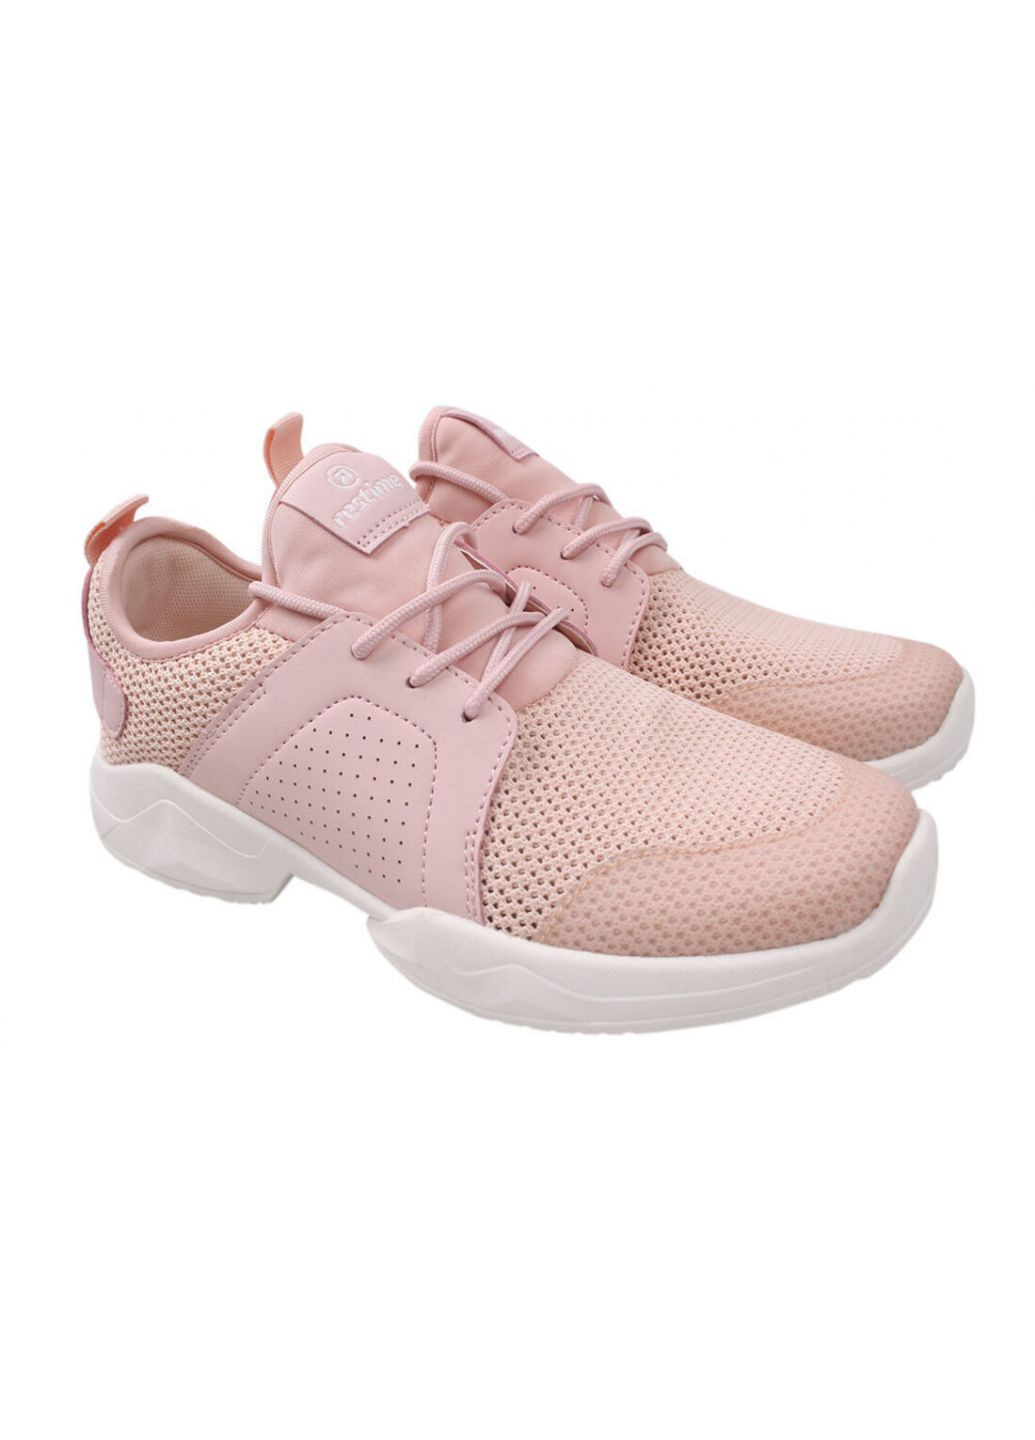 Розовые кроссовки женские текстиль, цвет розовый Restime 103-20LK